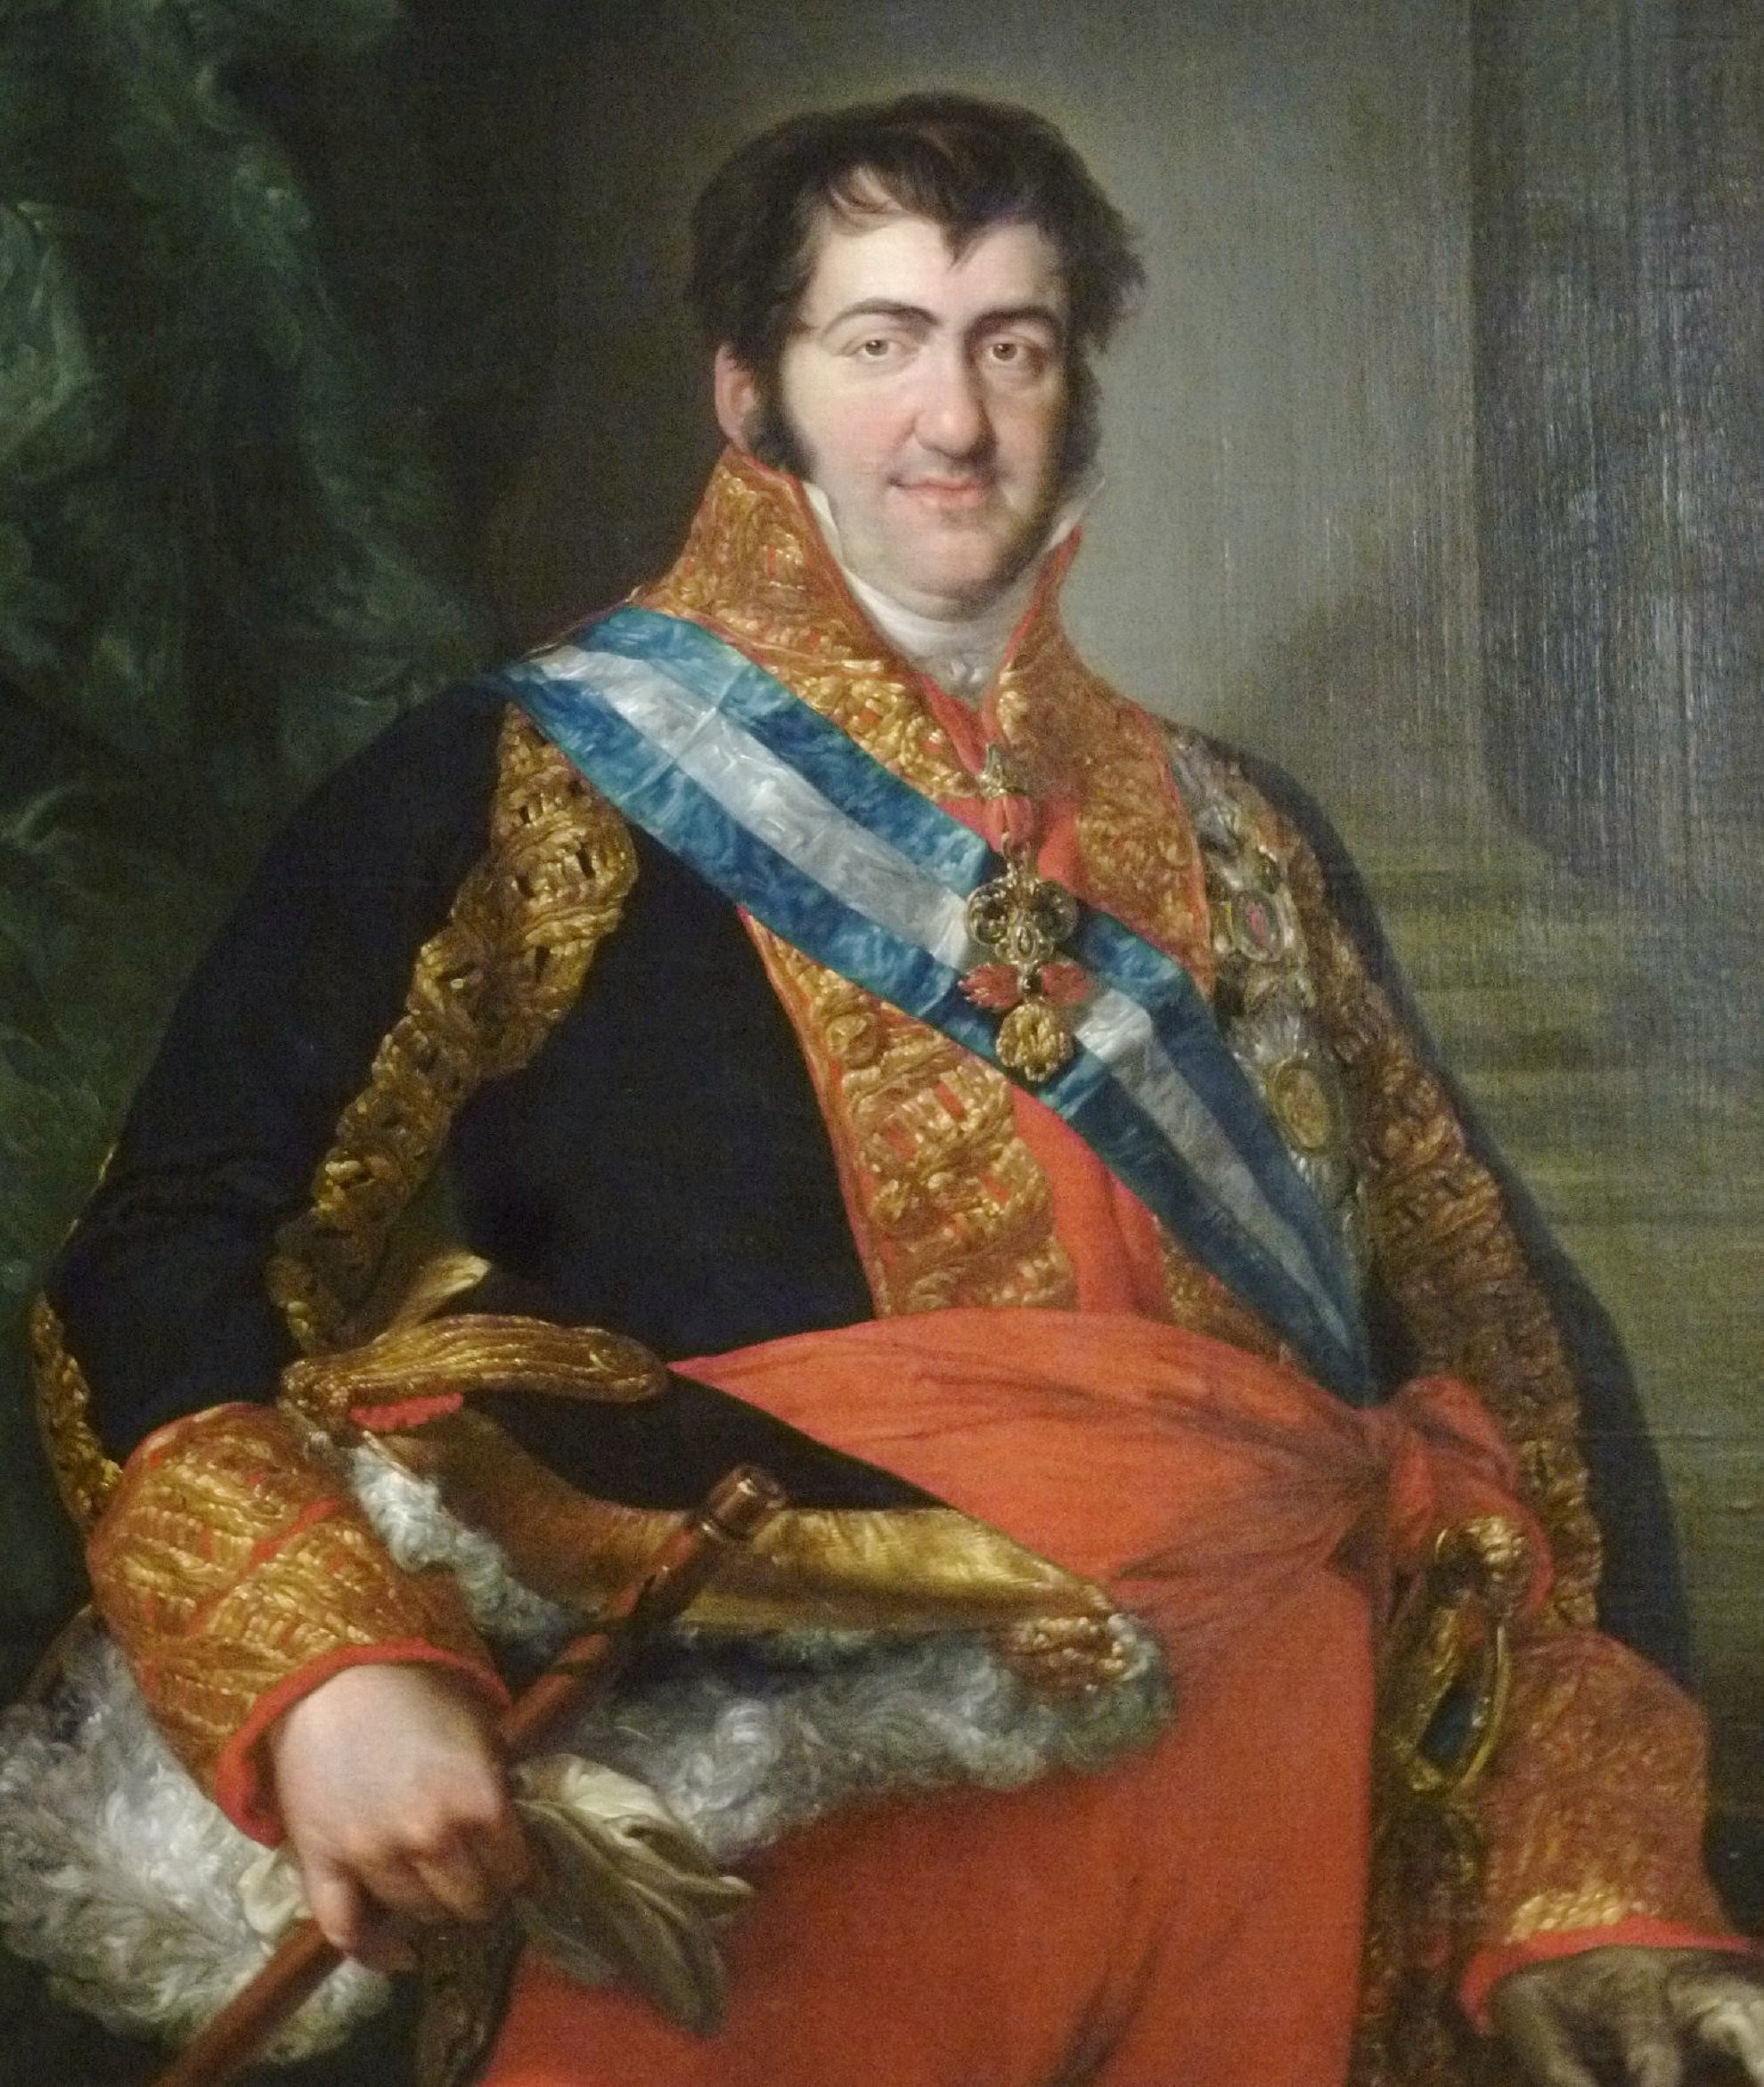 Fernando VII, el "rey felón", vuelve al reino español masticando cristales